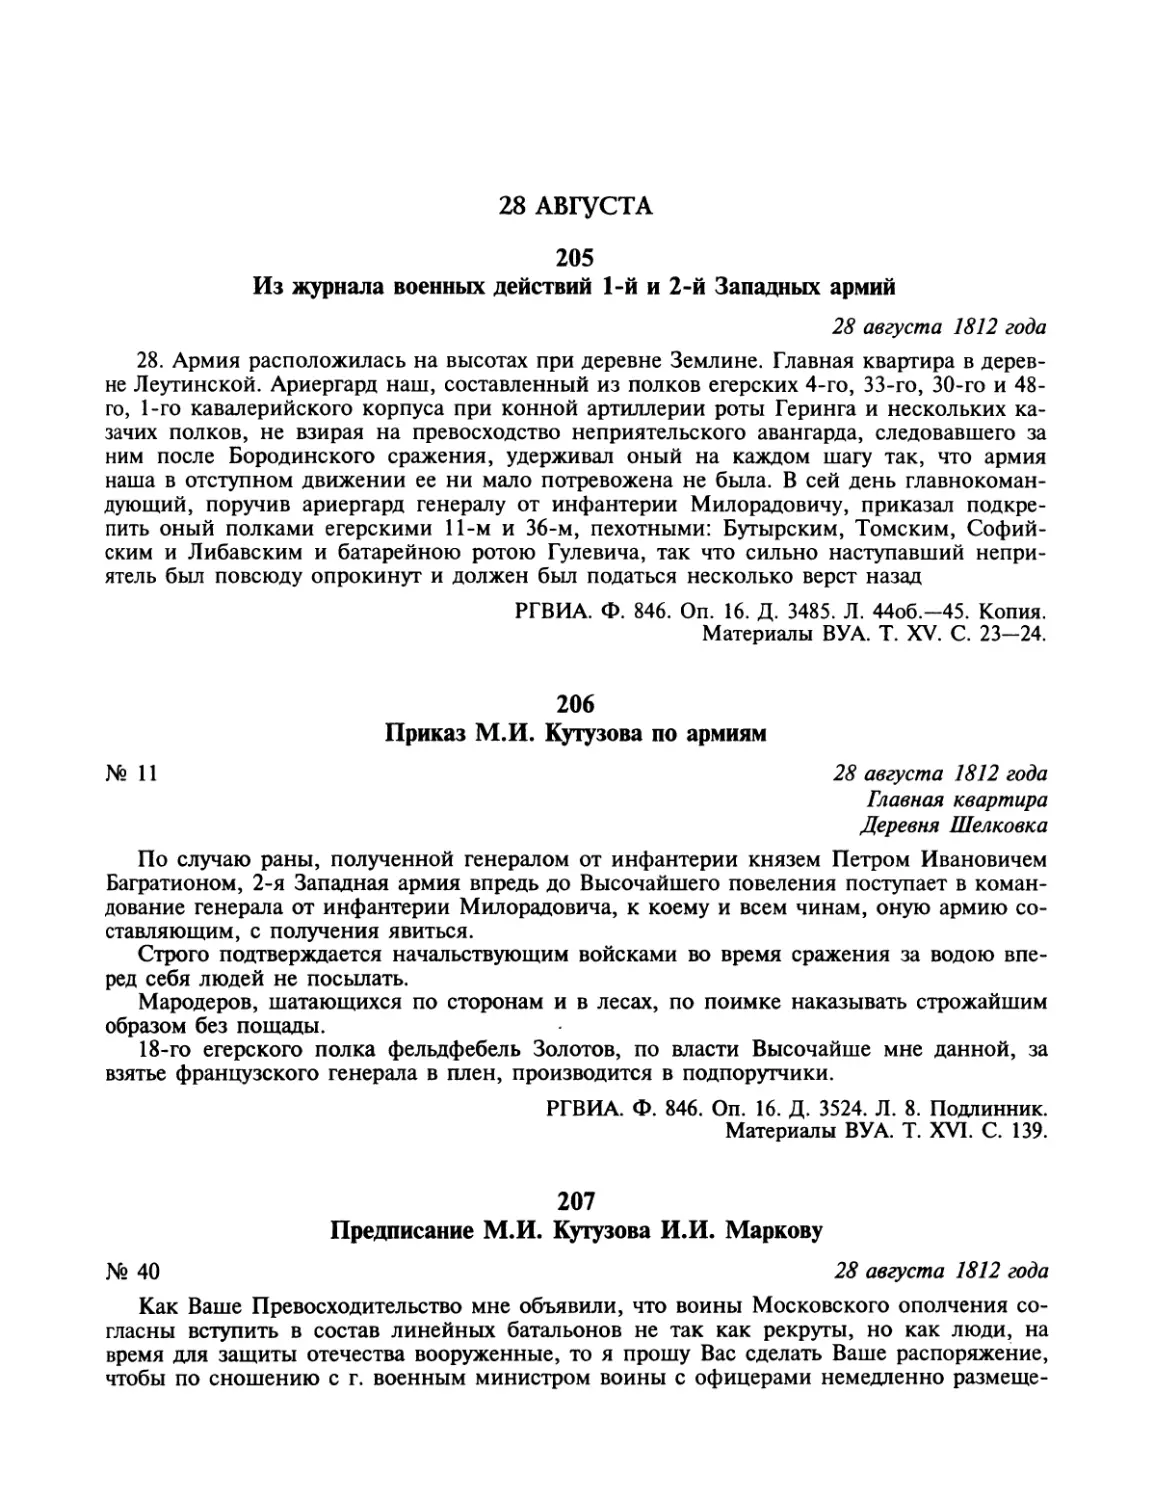 28 августа
Приказ М.И.Кутузова по армиям
Предписание М.И.Кутузова И.И.Маркову